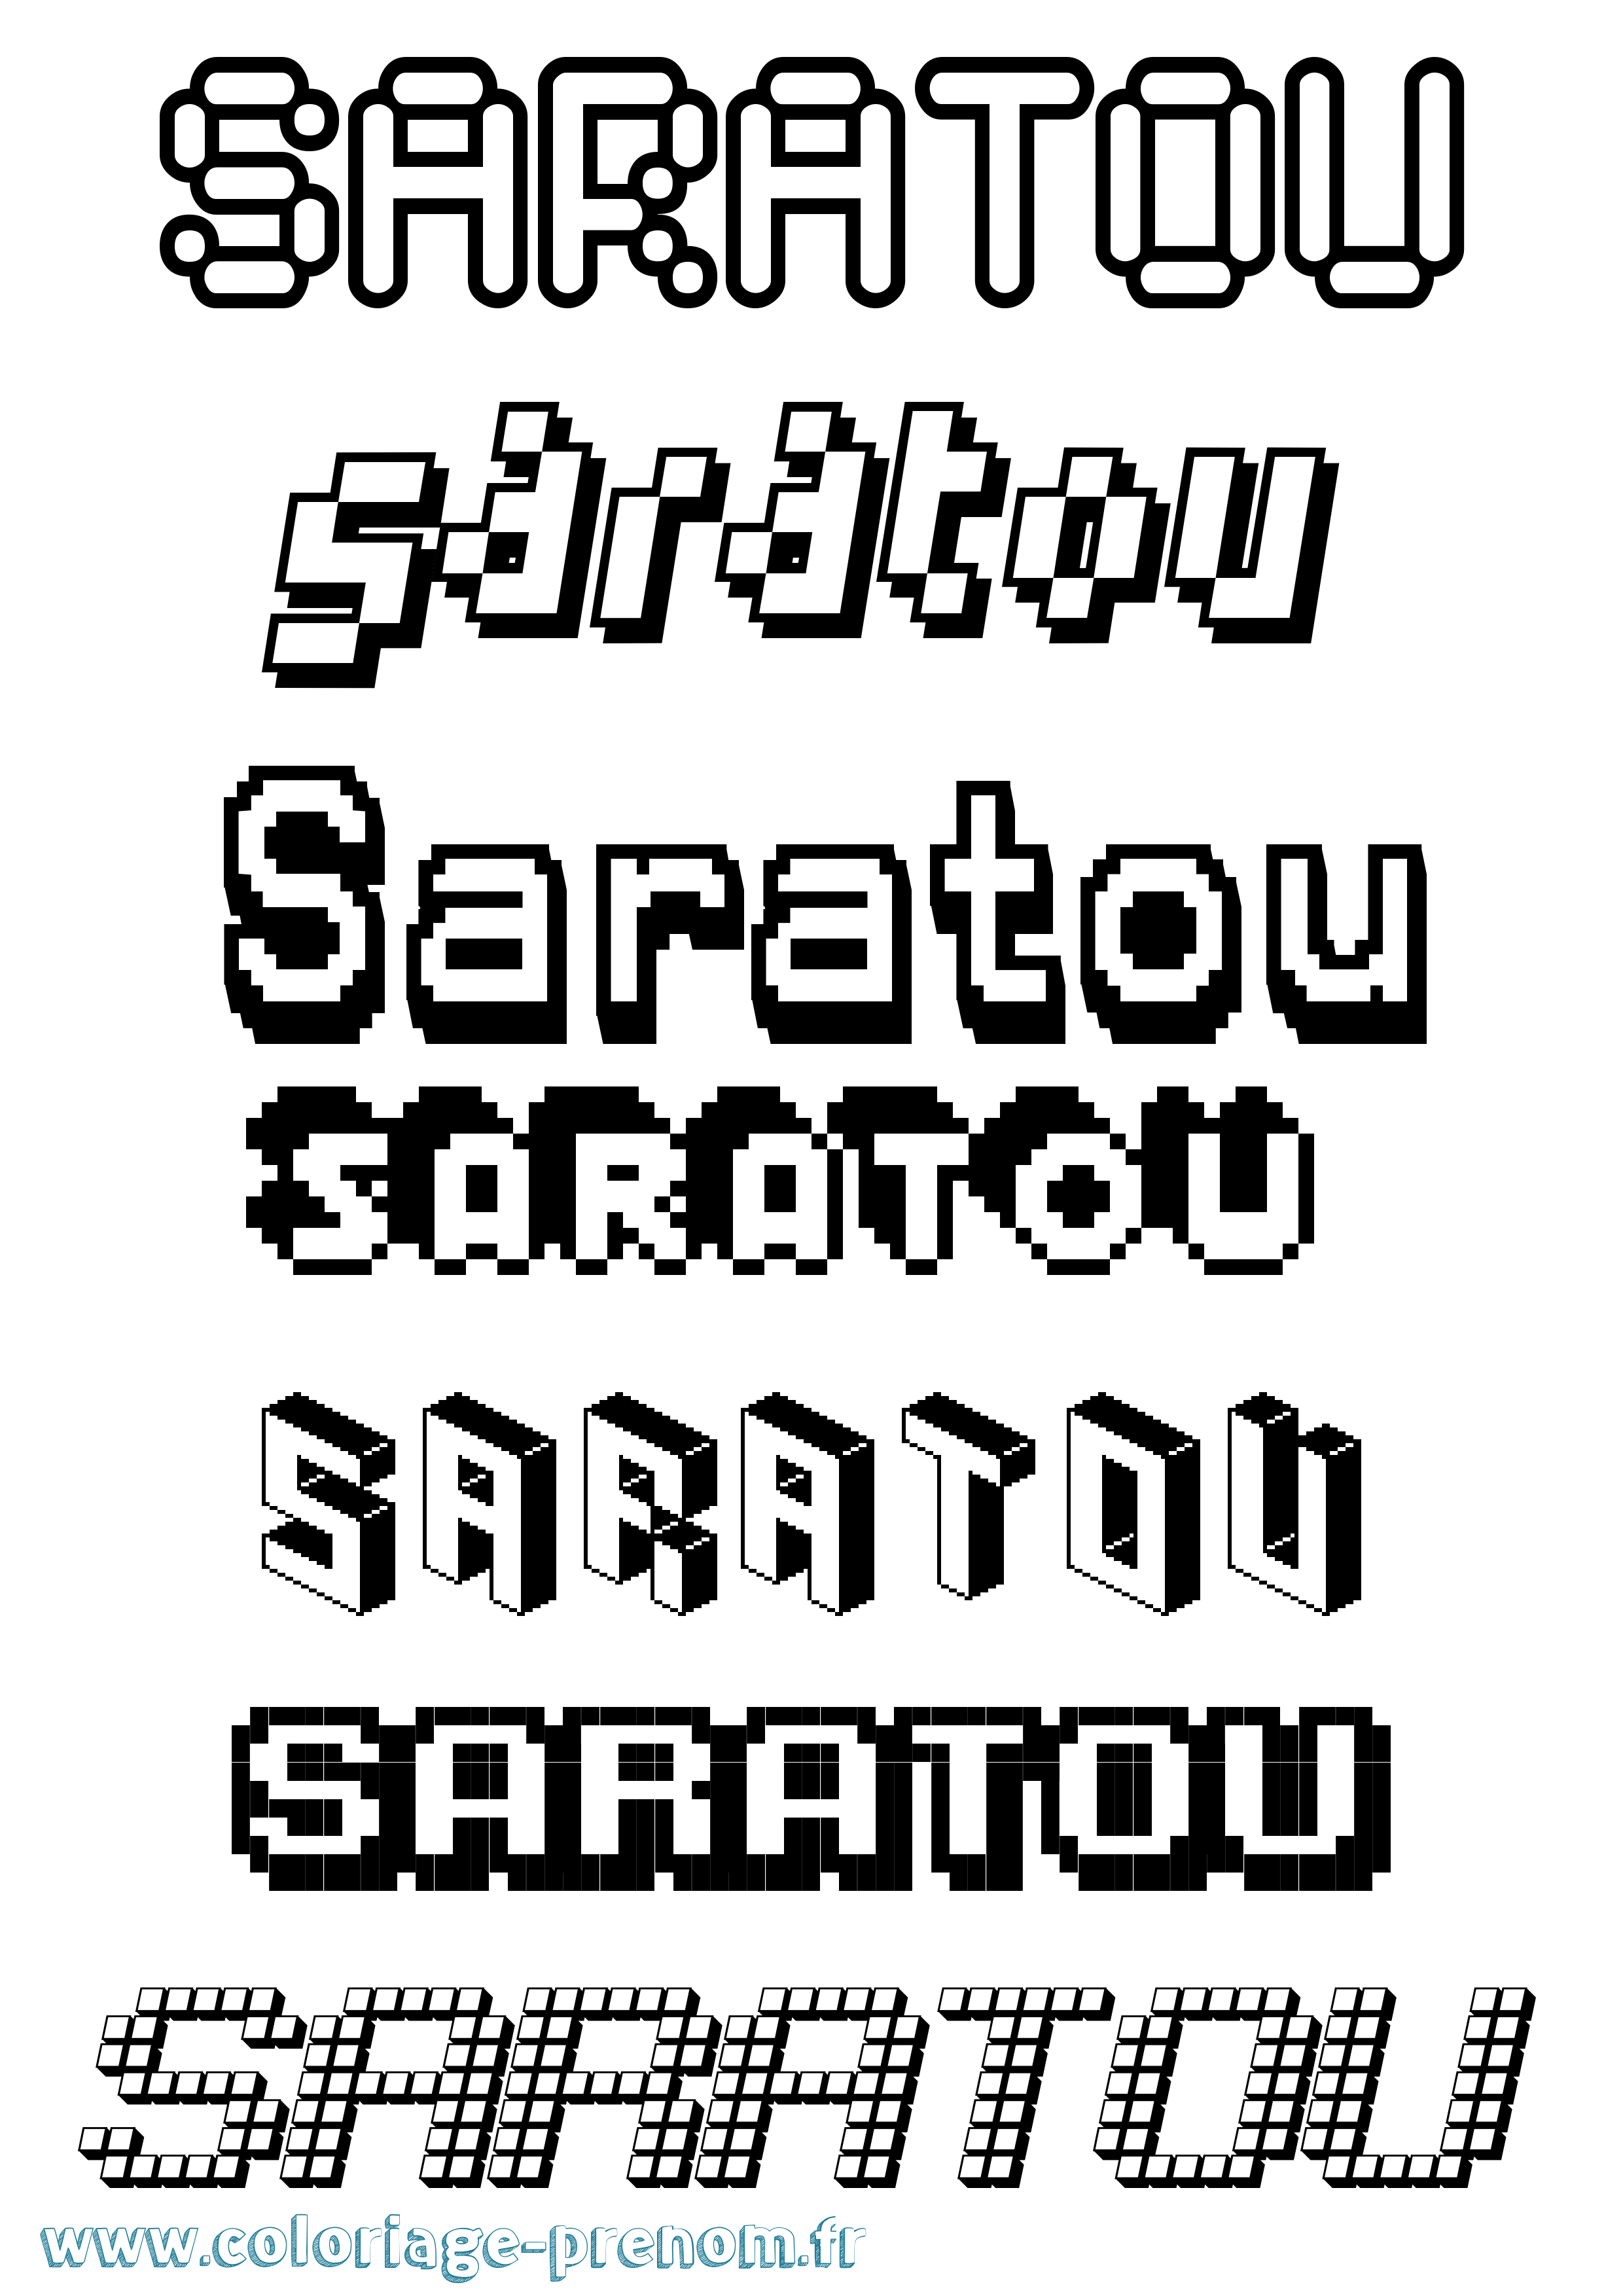 Coloriage prénom Saratou Pixel